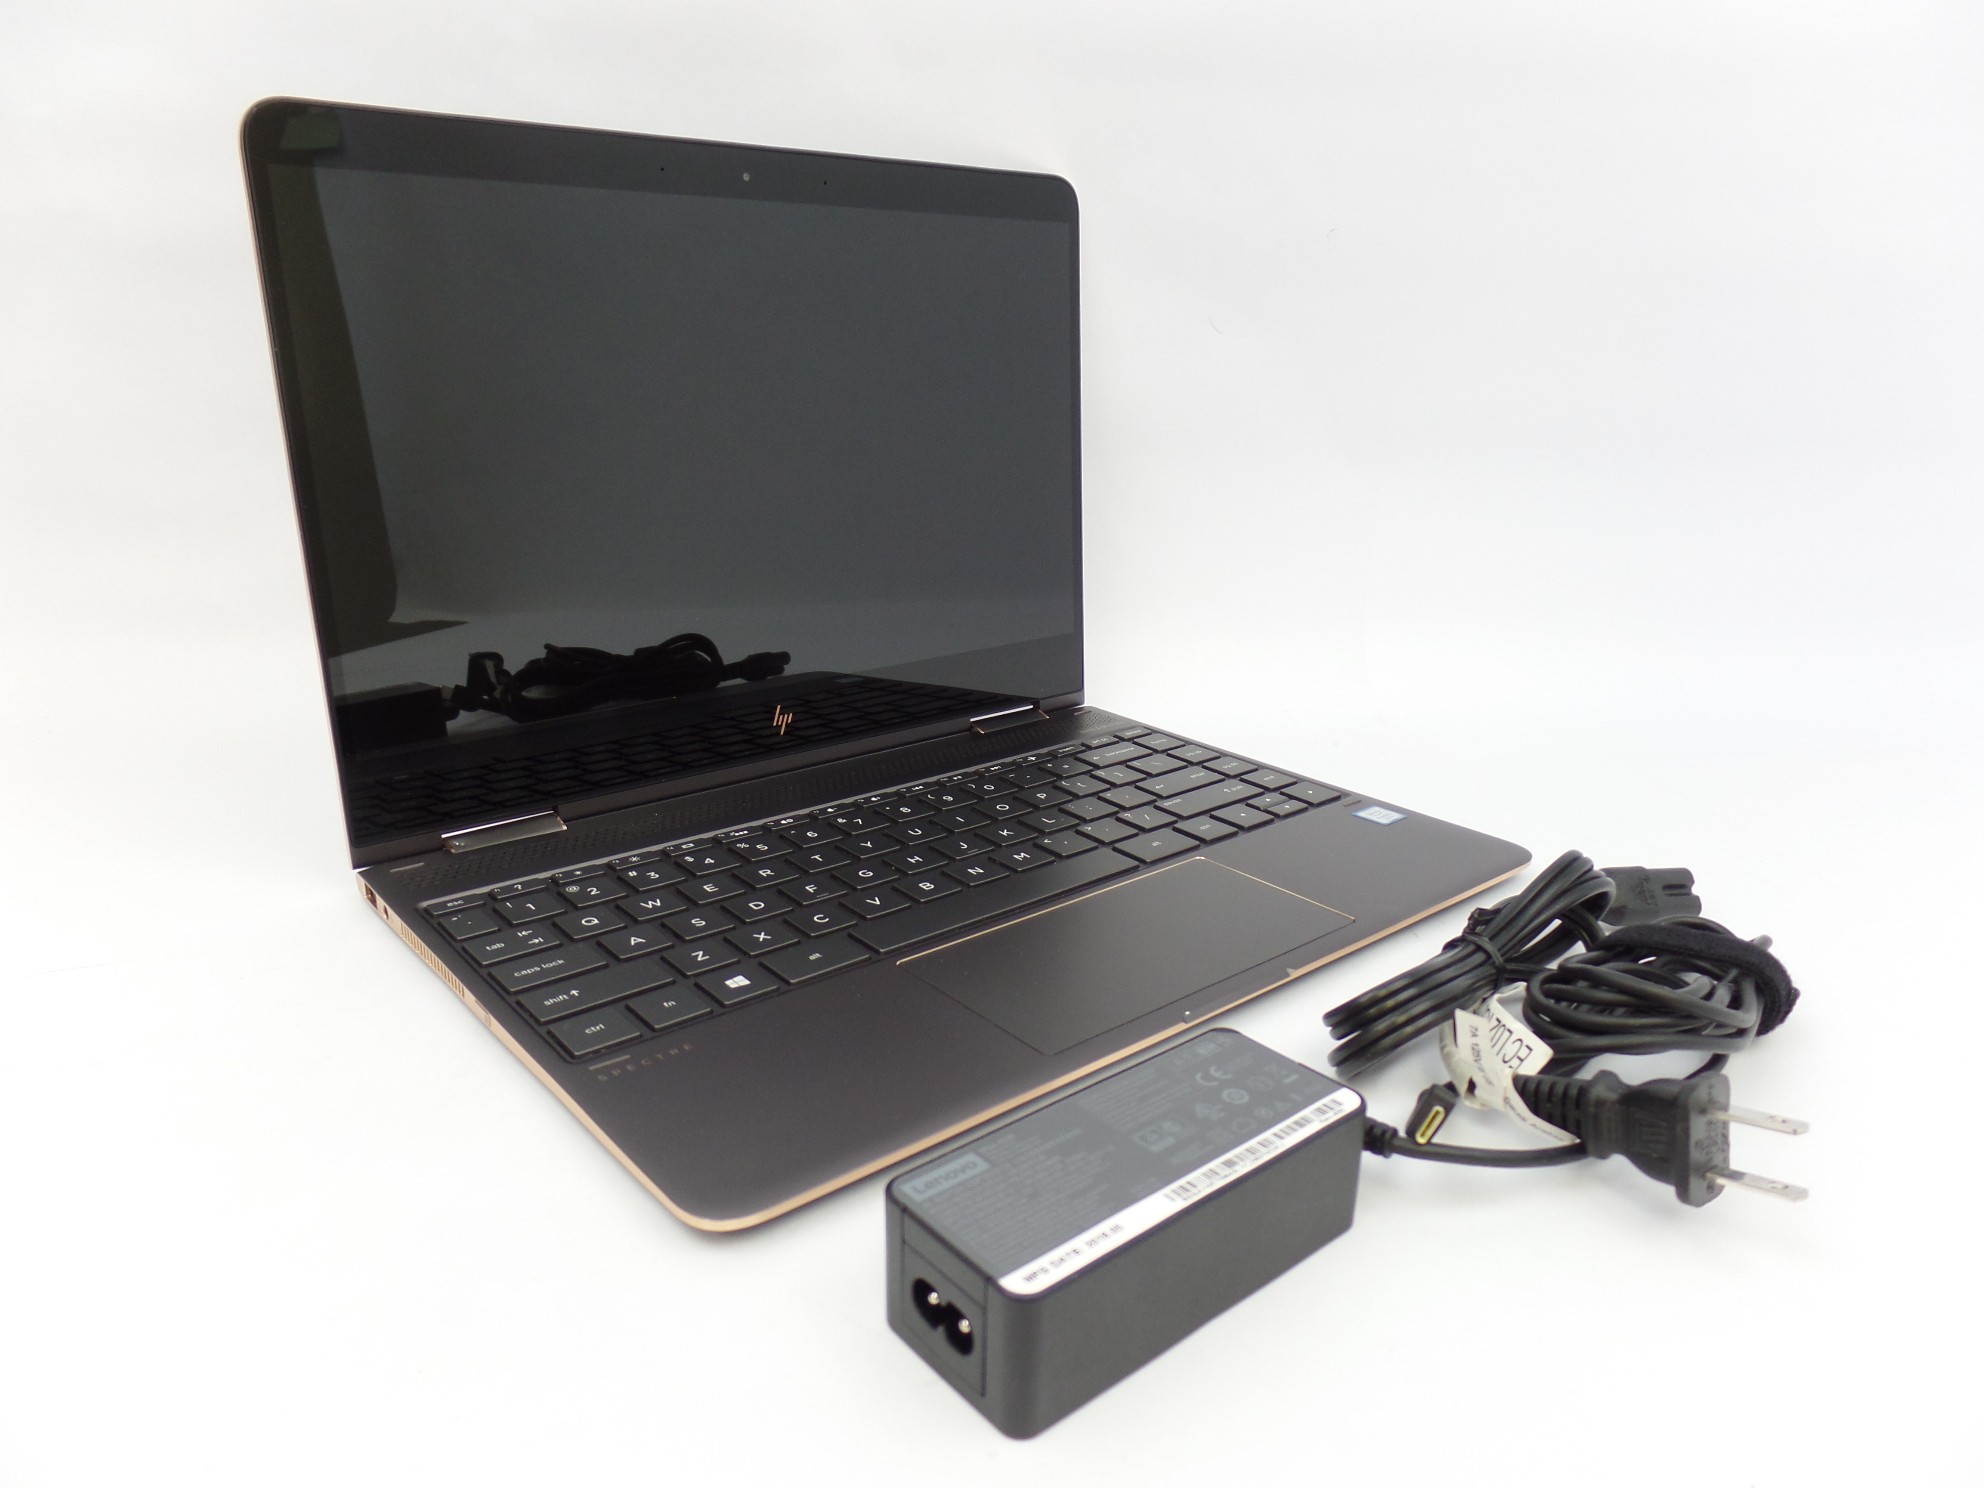 HP Spectre x360 13-ac033dx 13.3" FHD Touch i7-7500U 16GB 512GB W10H 2in1 Laptop